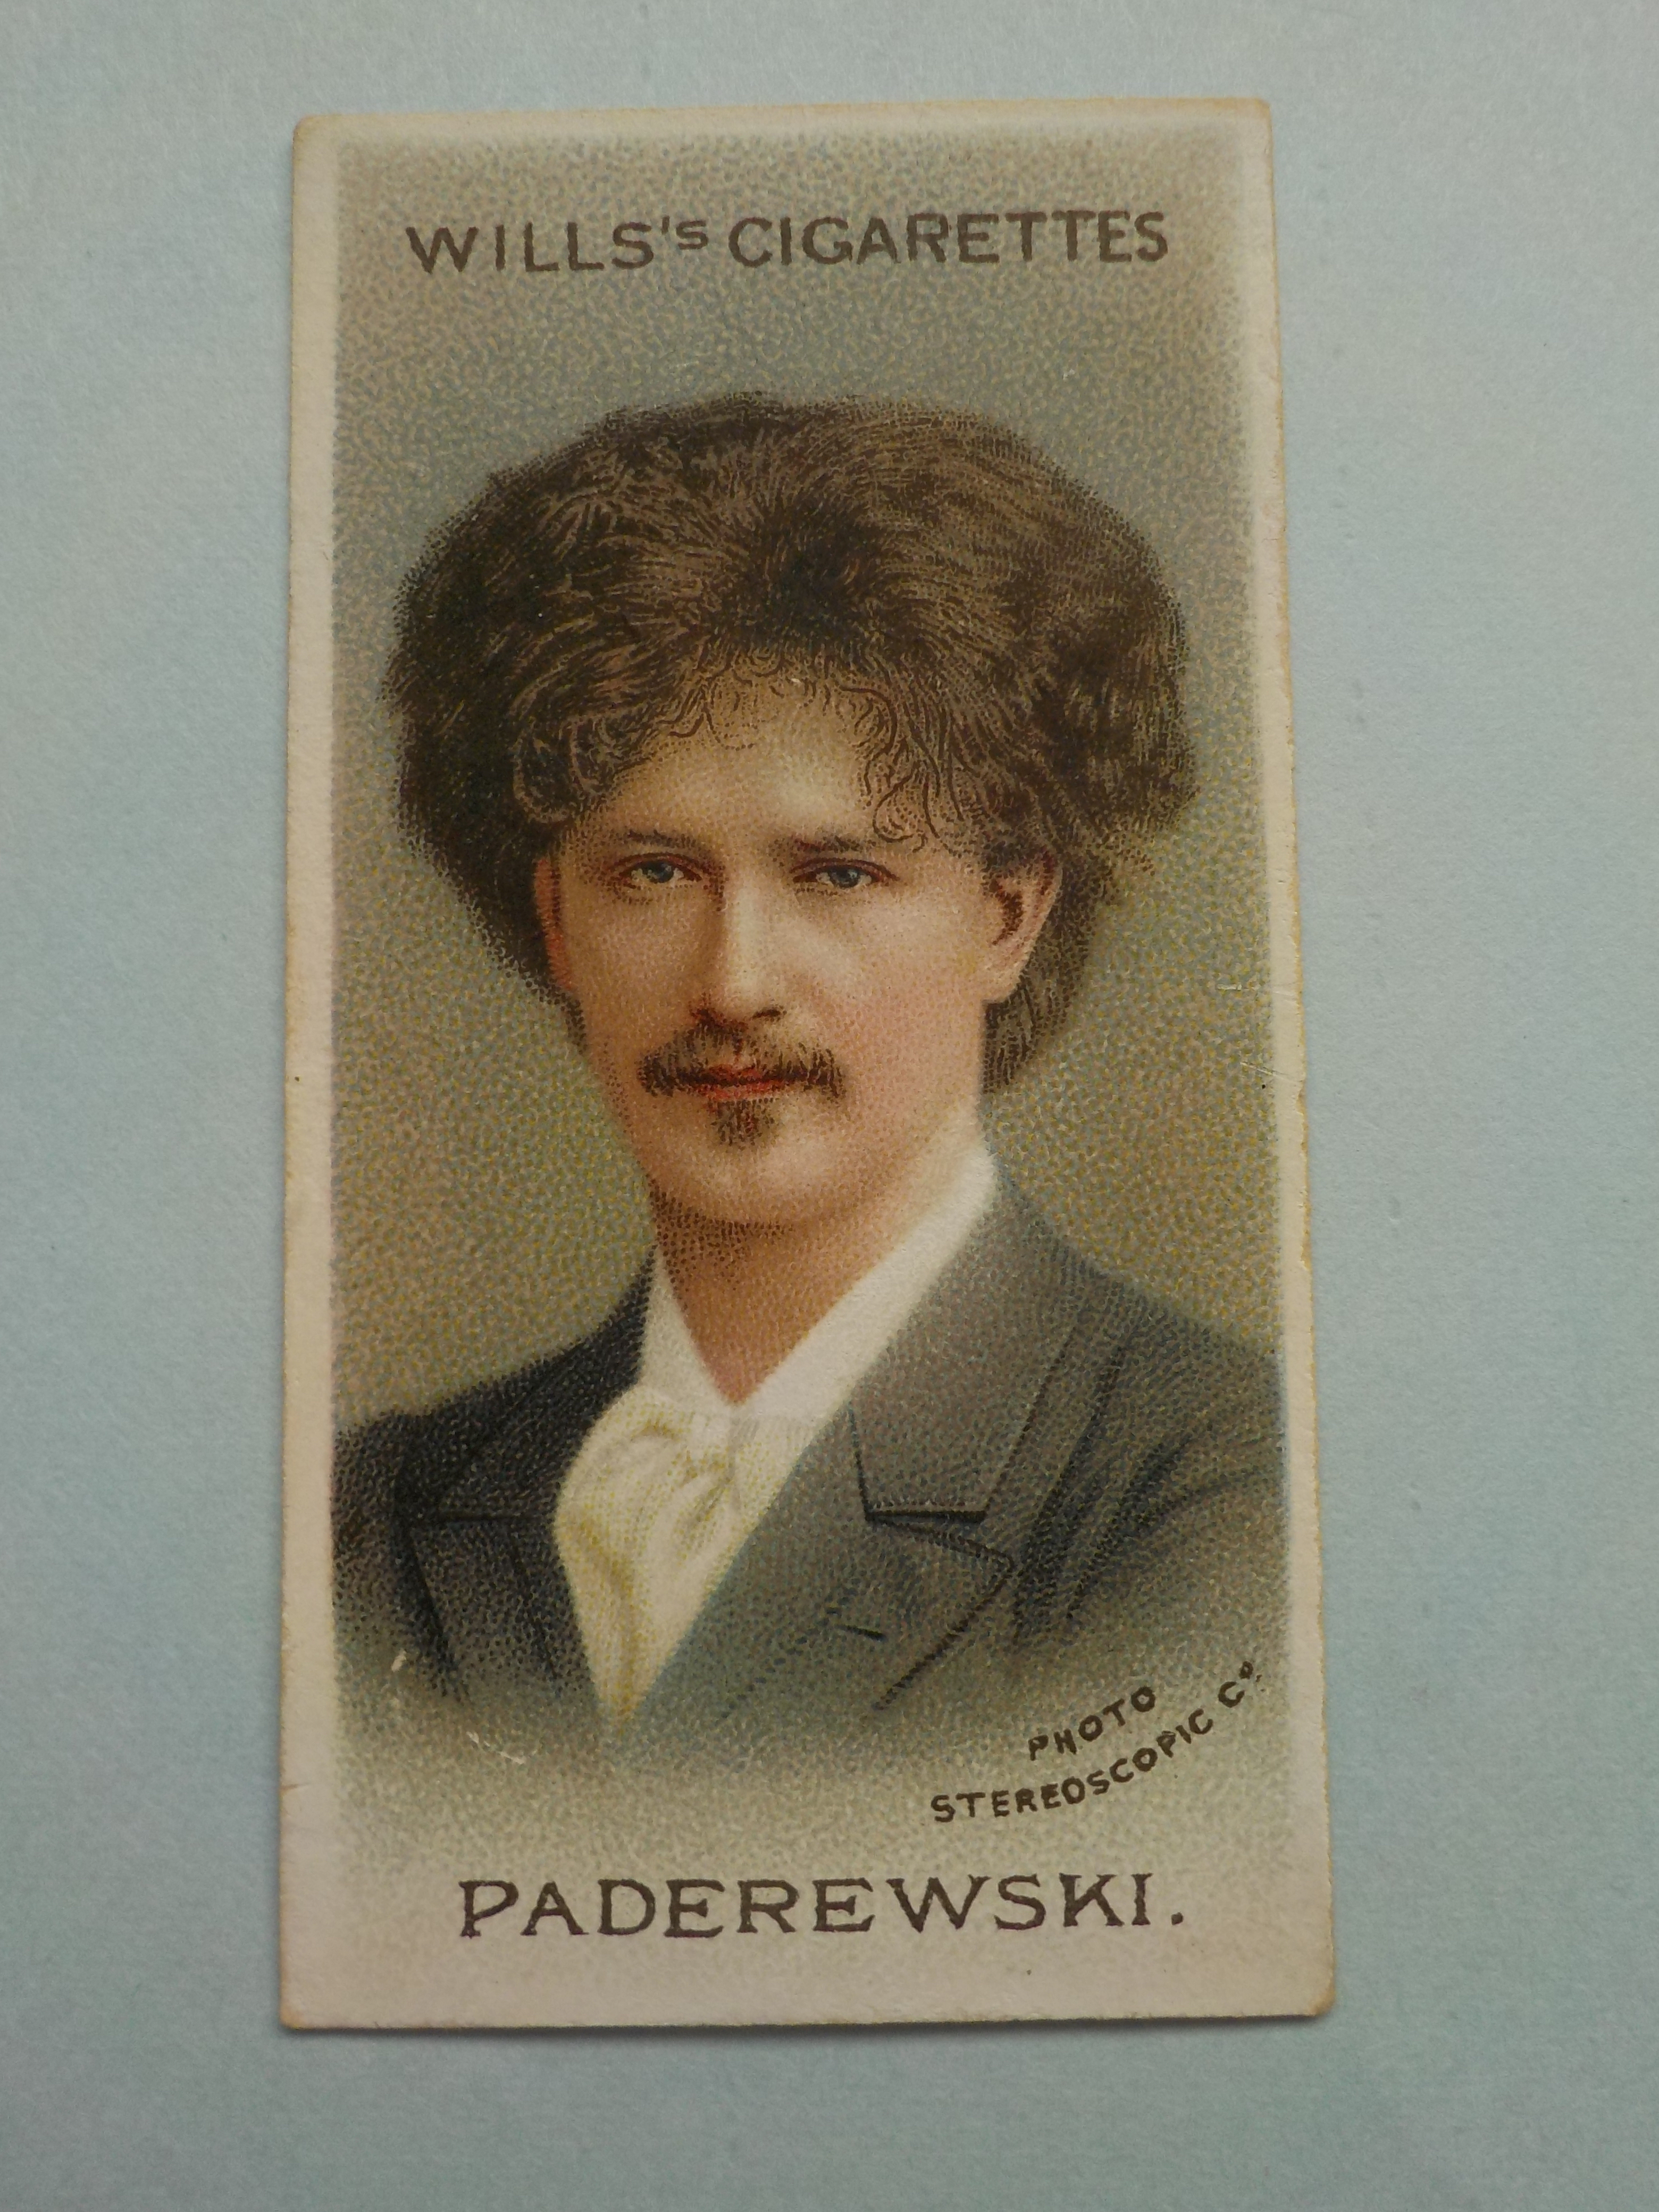 Paderewski trading card